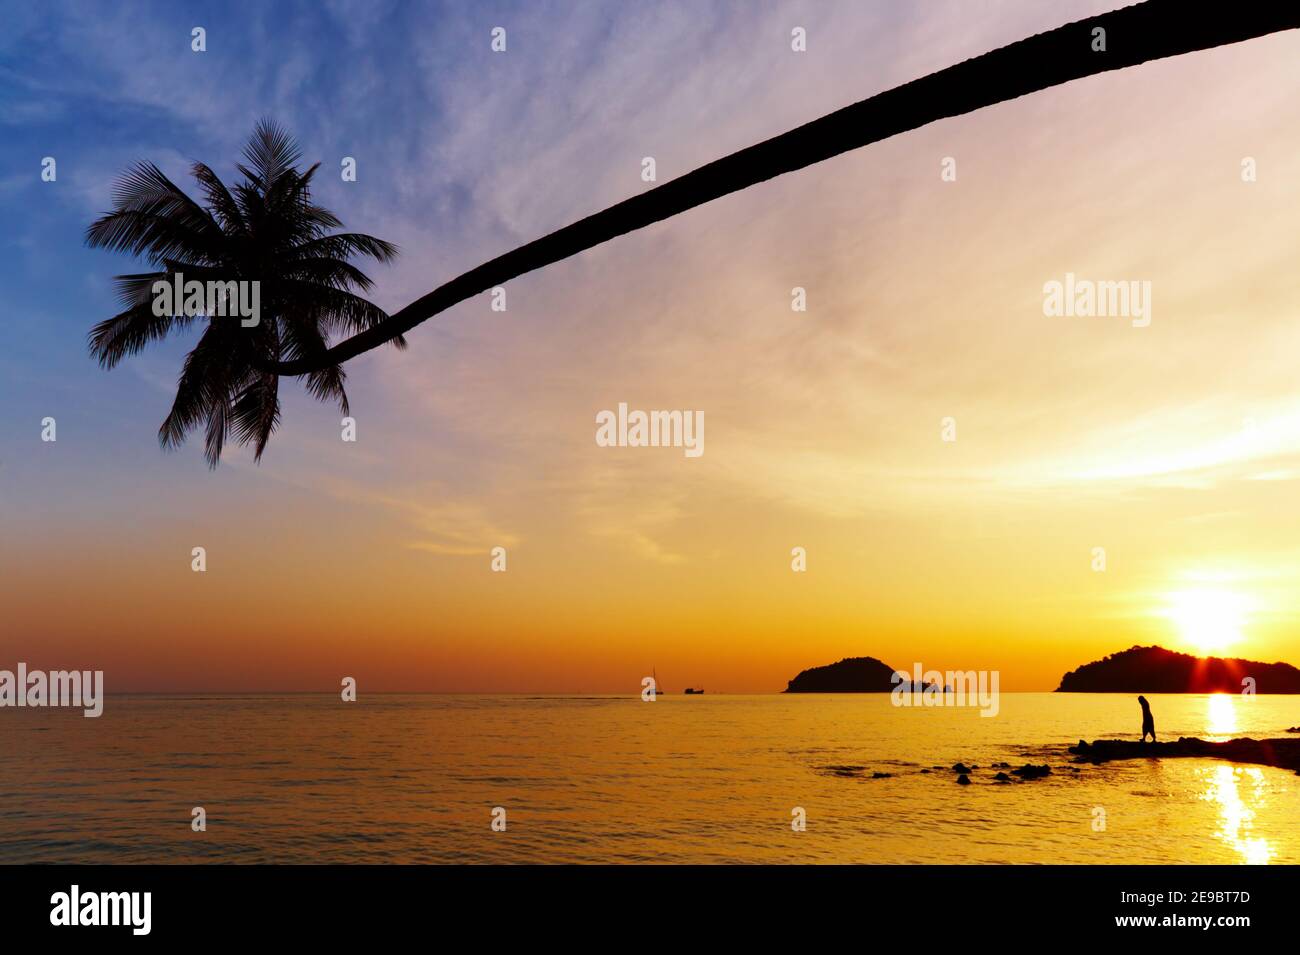 Tropical beach, Mak island, Thailand Stock Photo